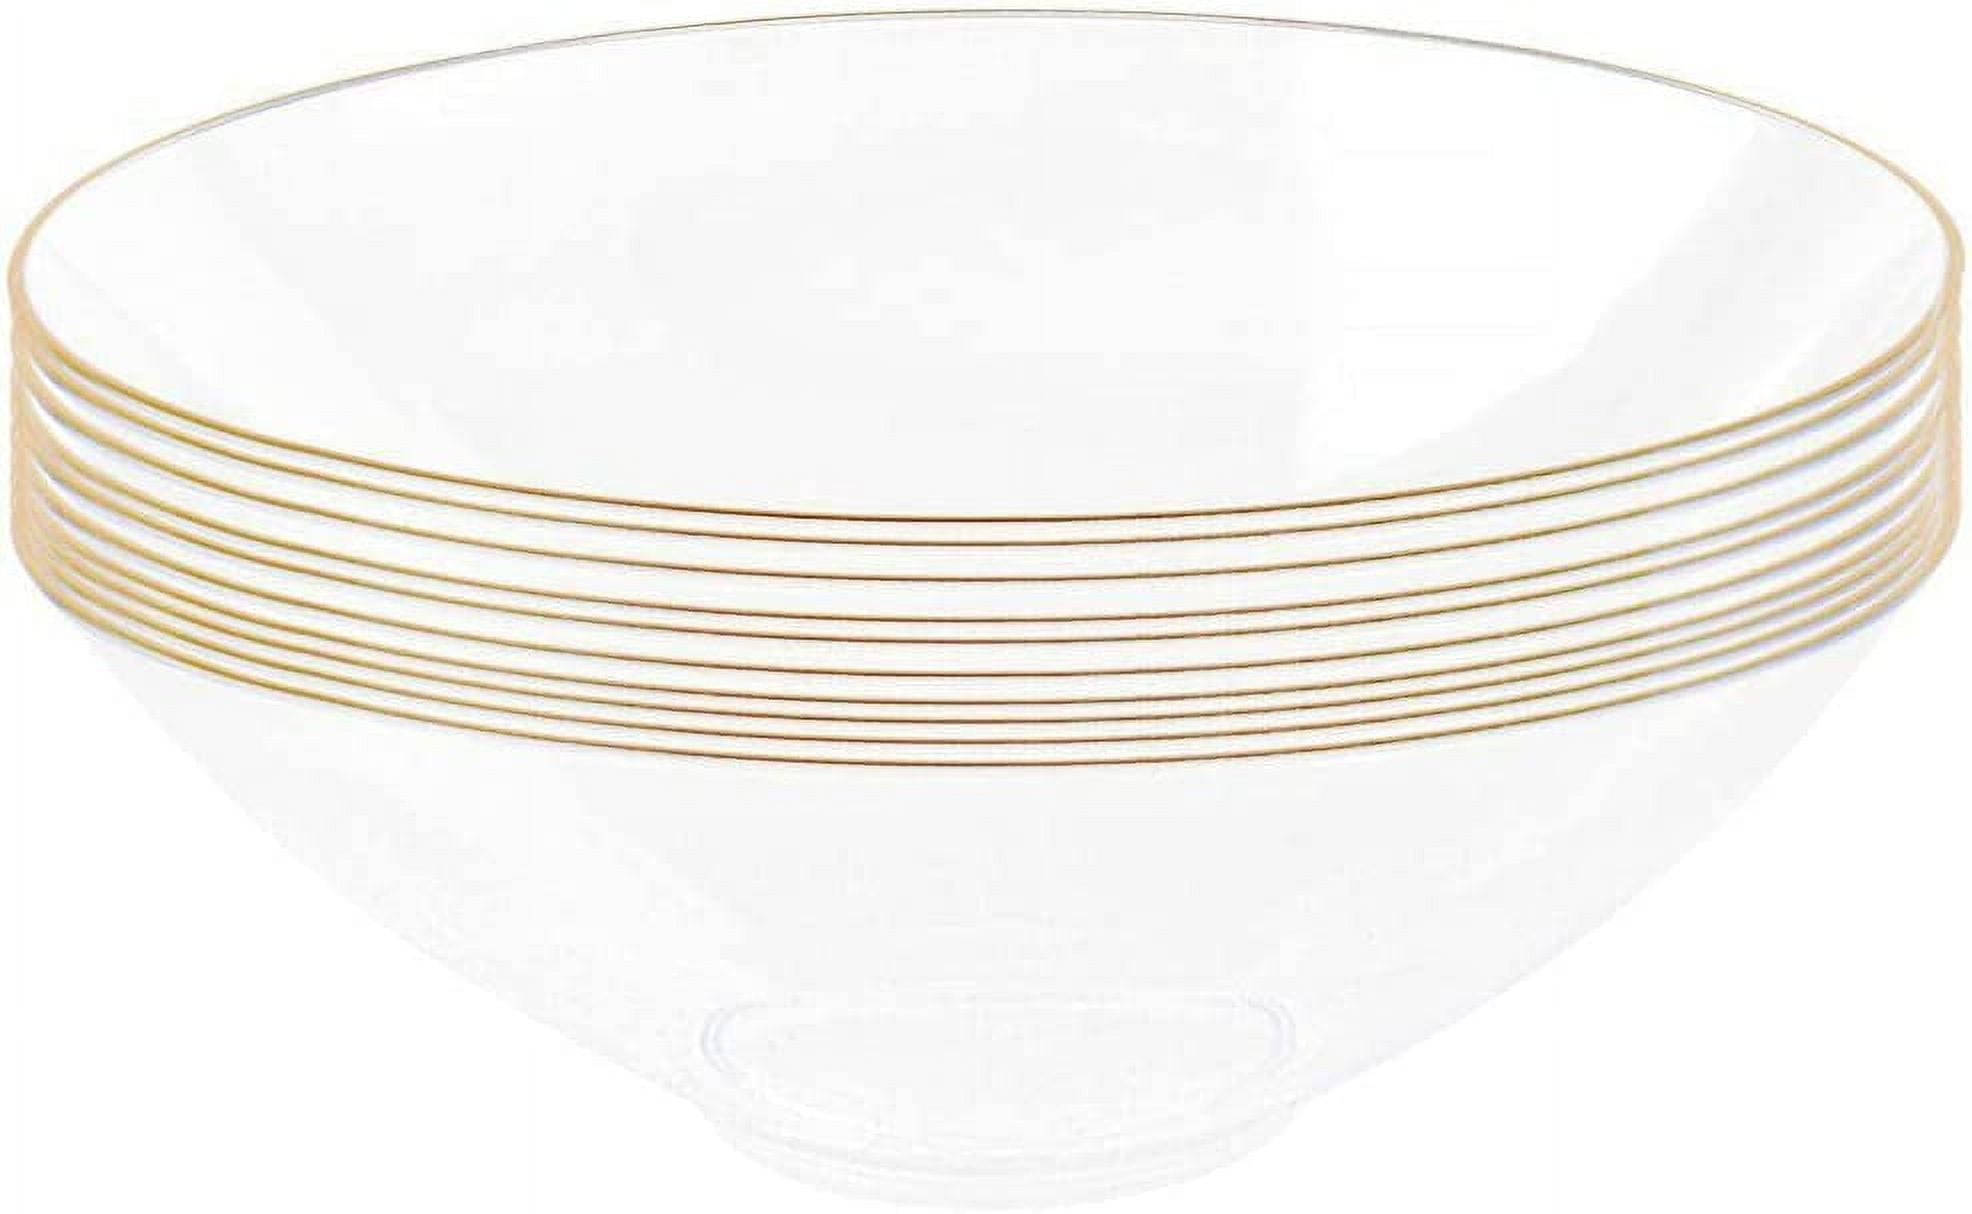 60 Disposable Gold Plastic Dessert Bowls, 12 Oz Soup Bowls, Gold